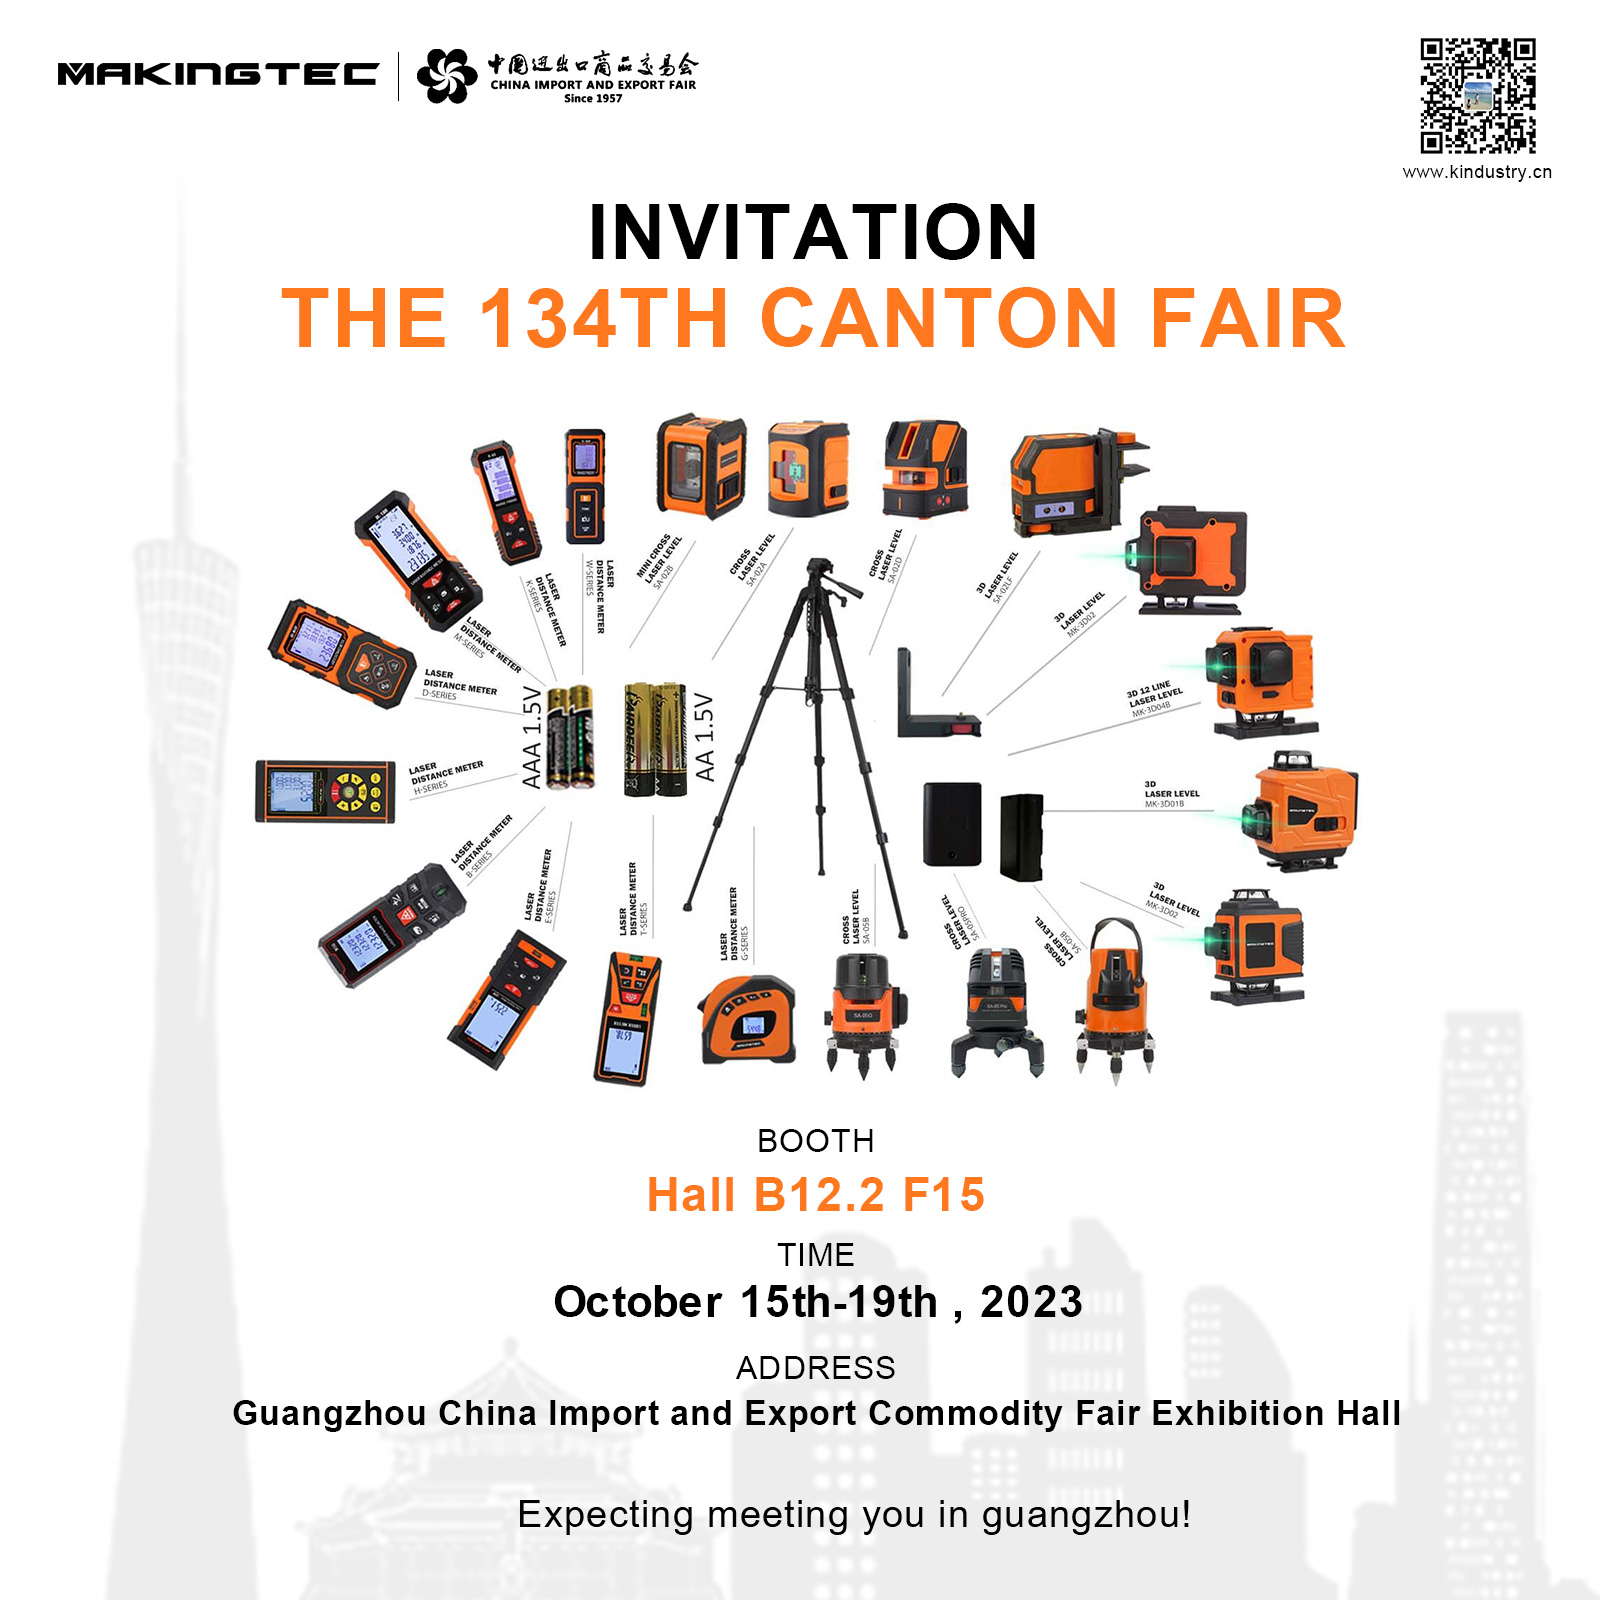 The 134th Canton Fair